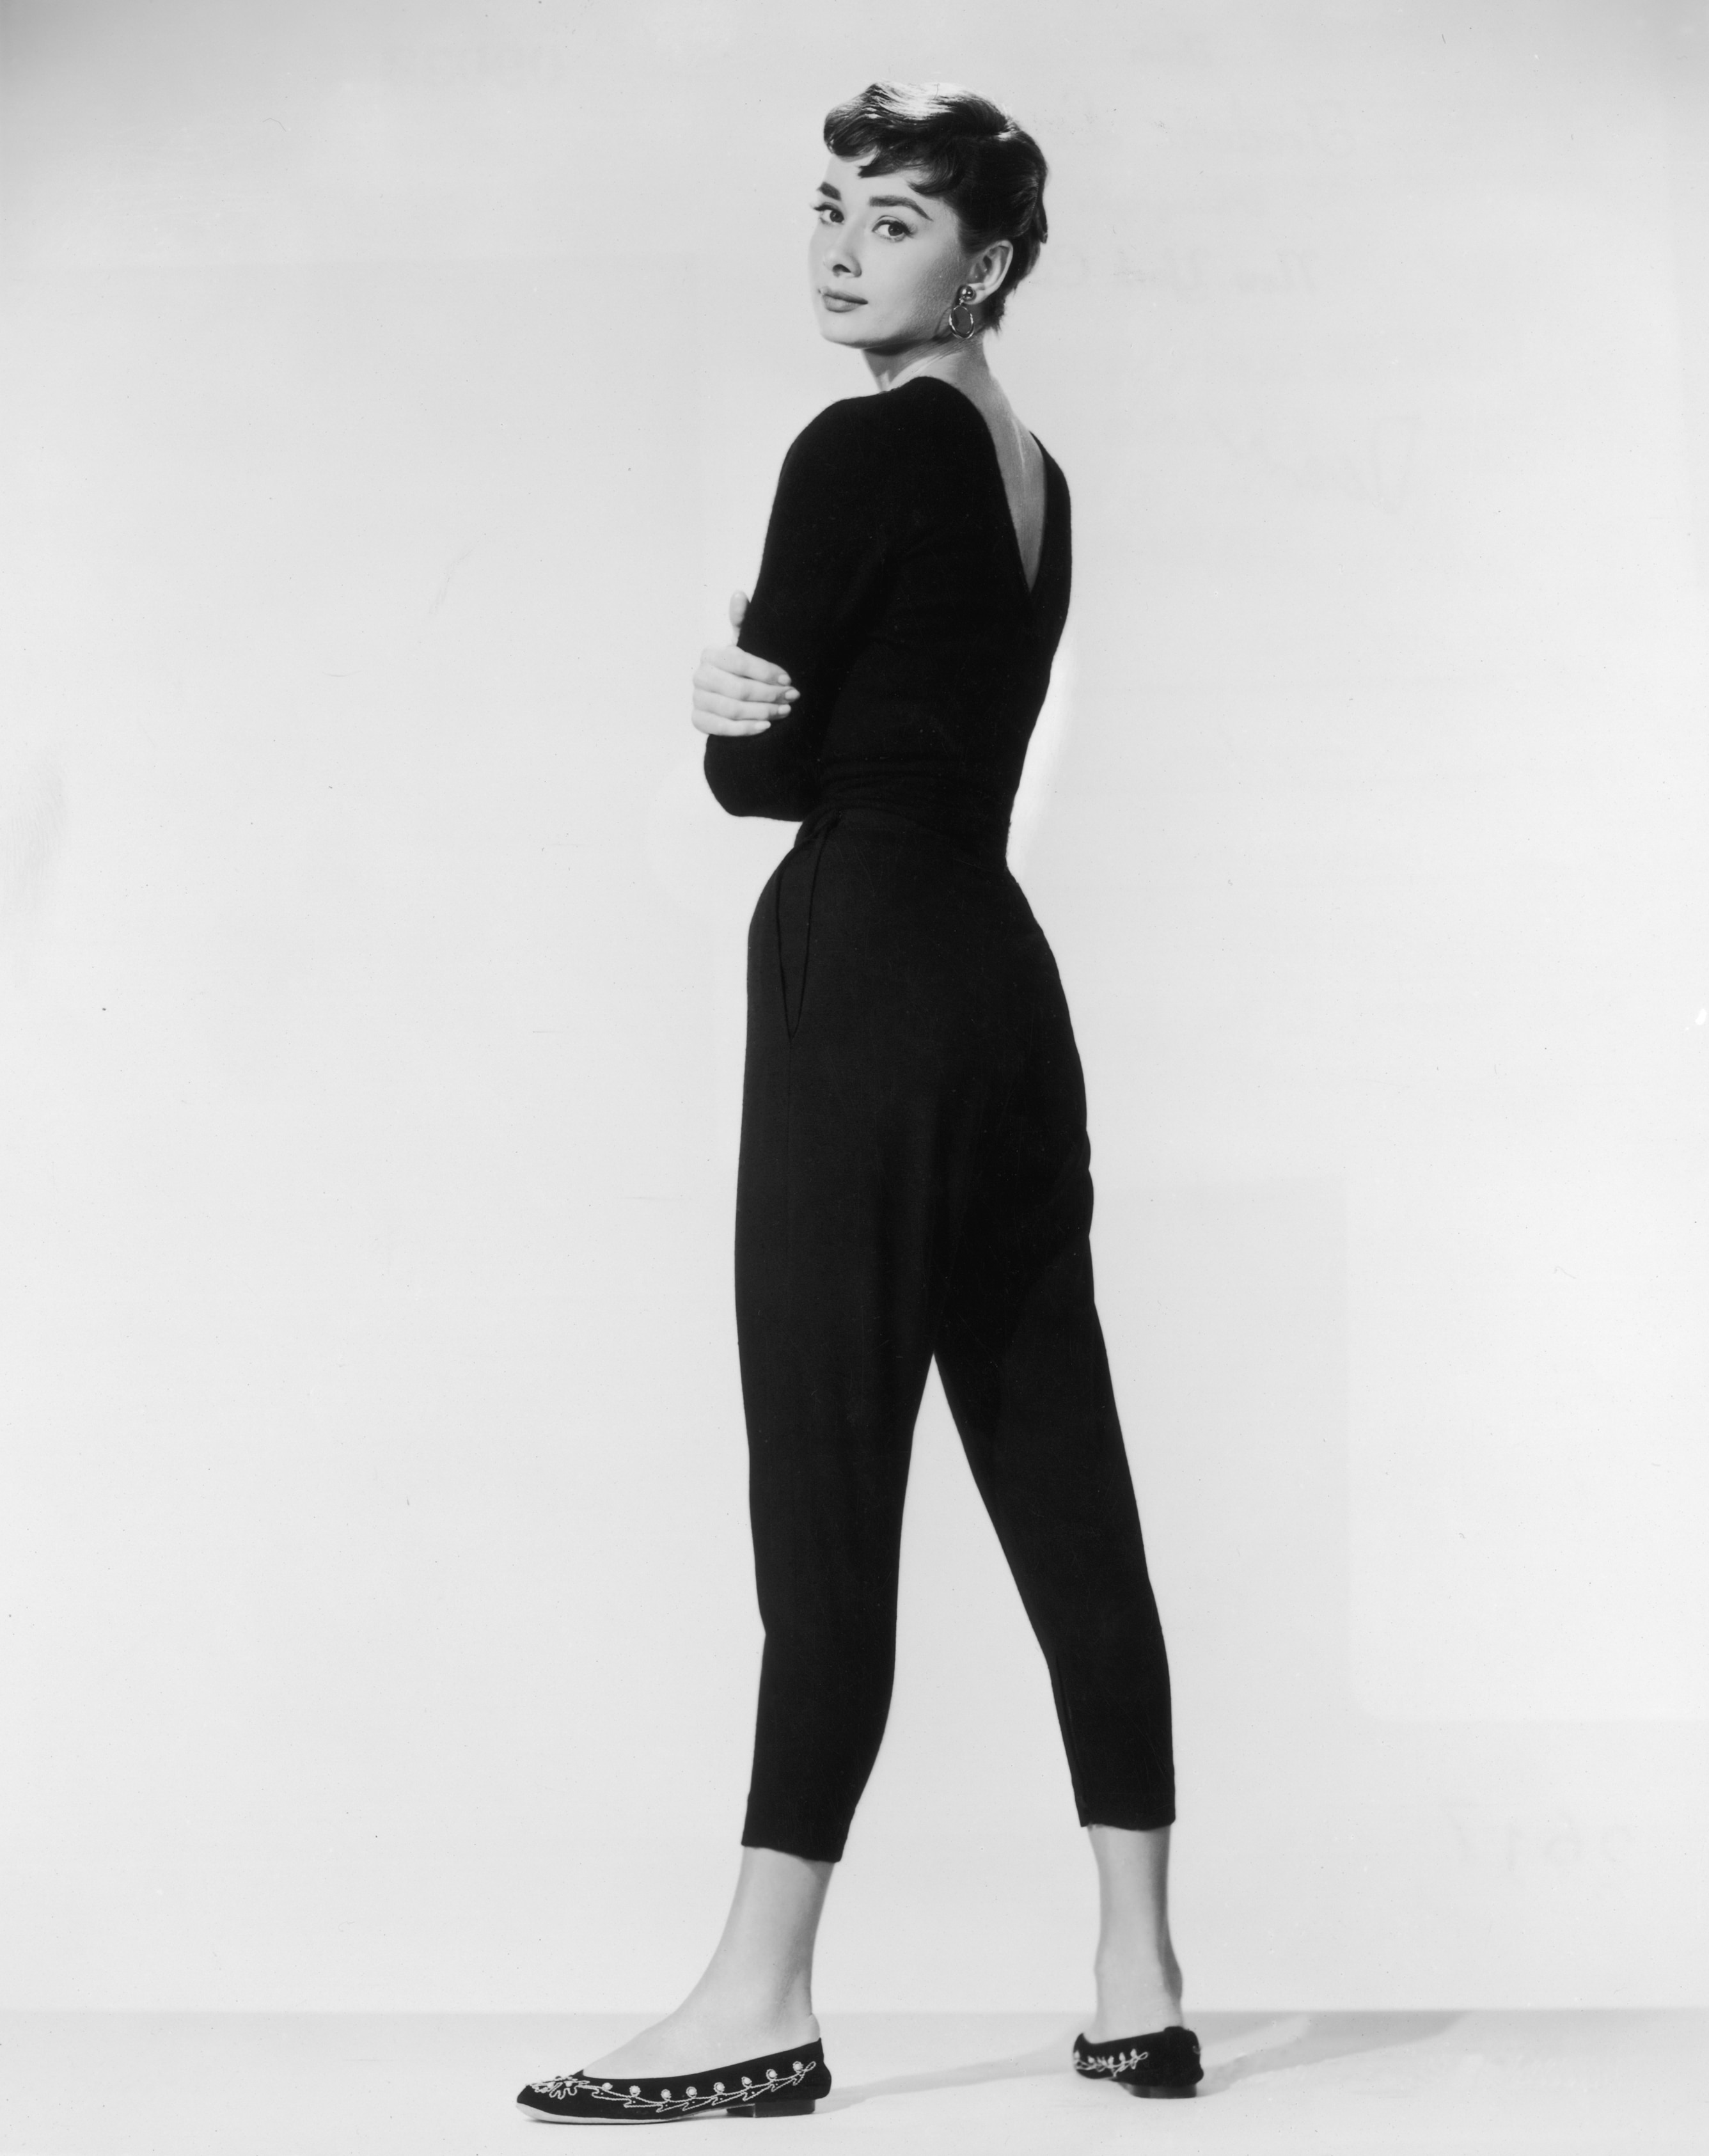 Audrey Hepburn wears capri pants and looks over her shoulder towards the photographer